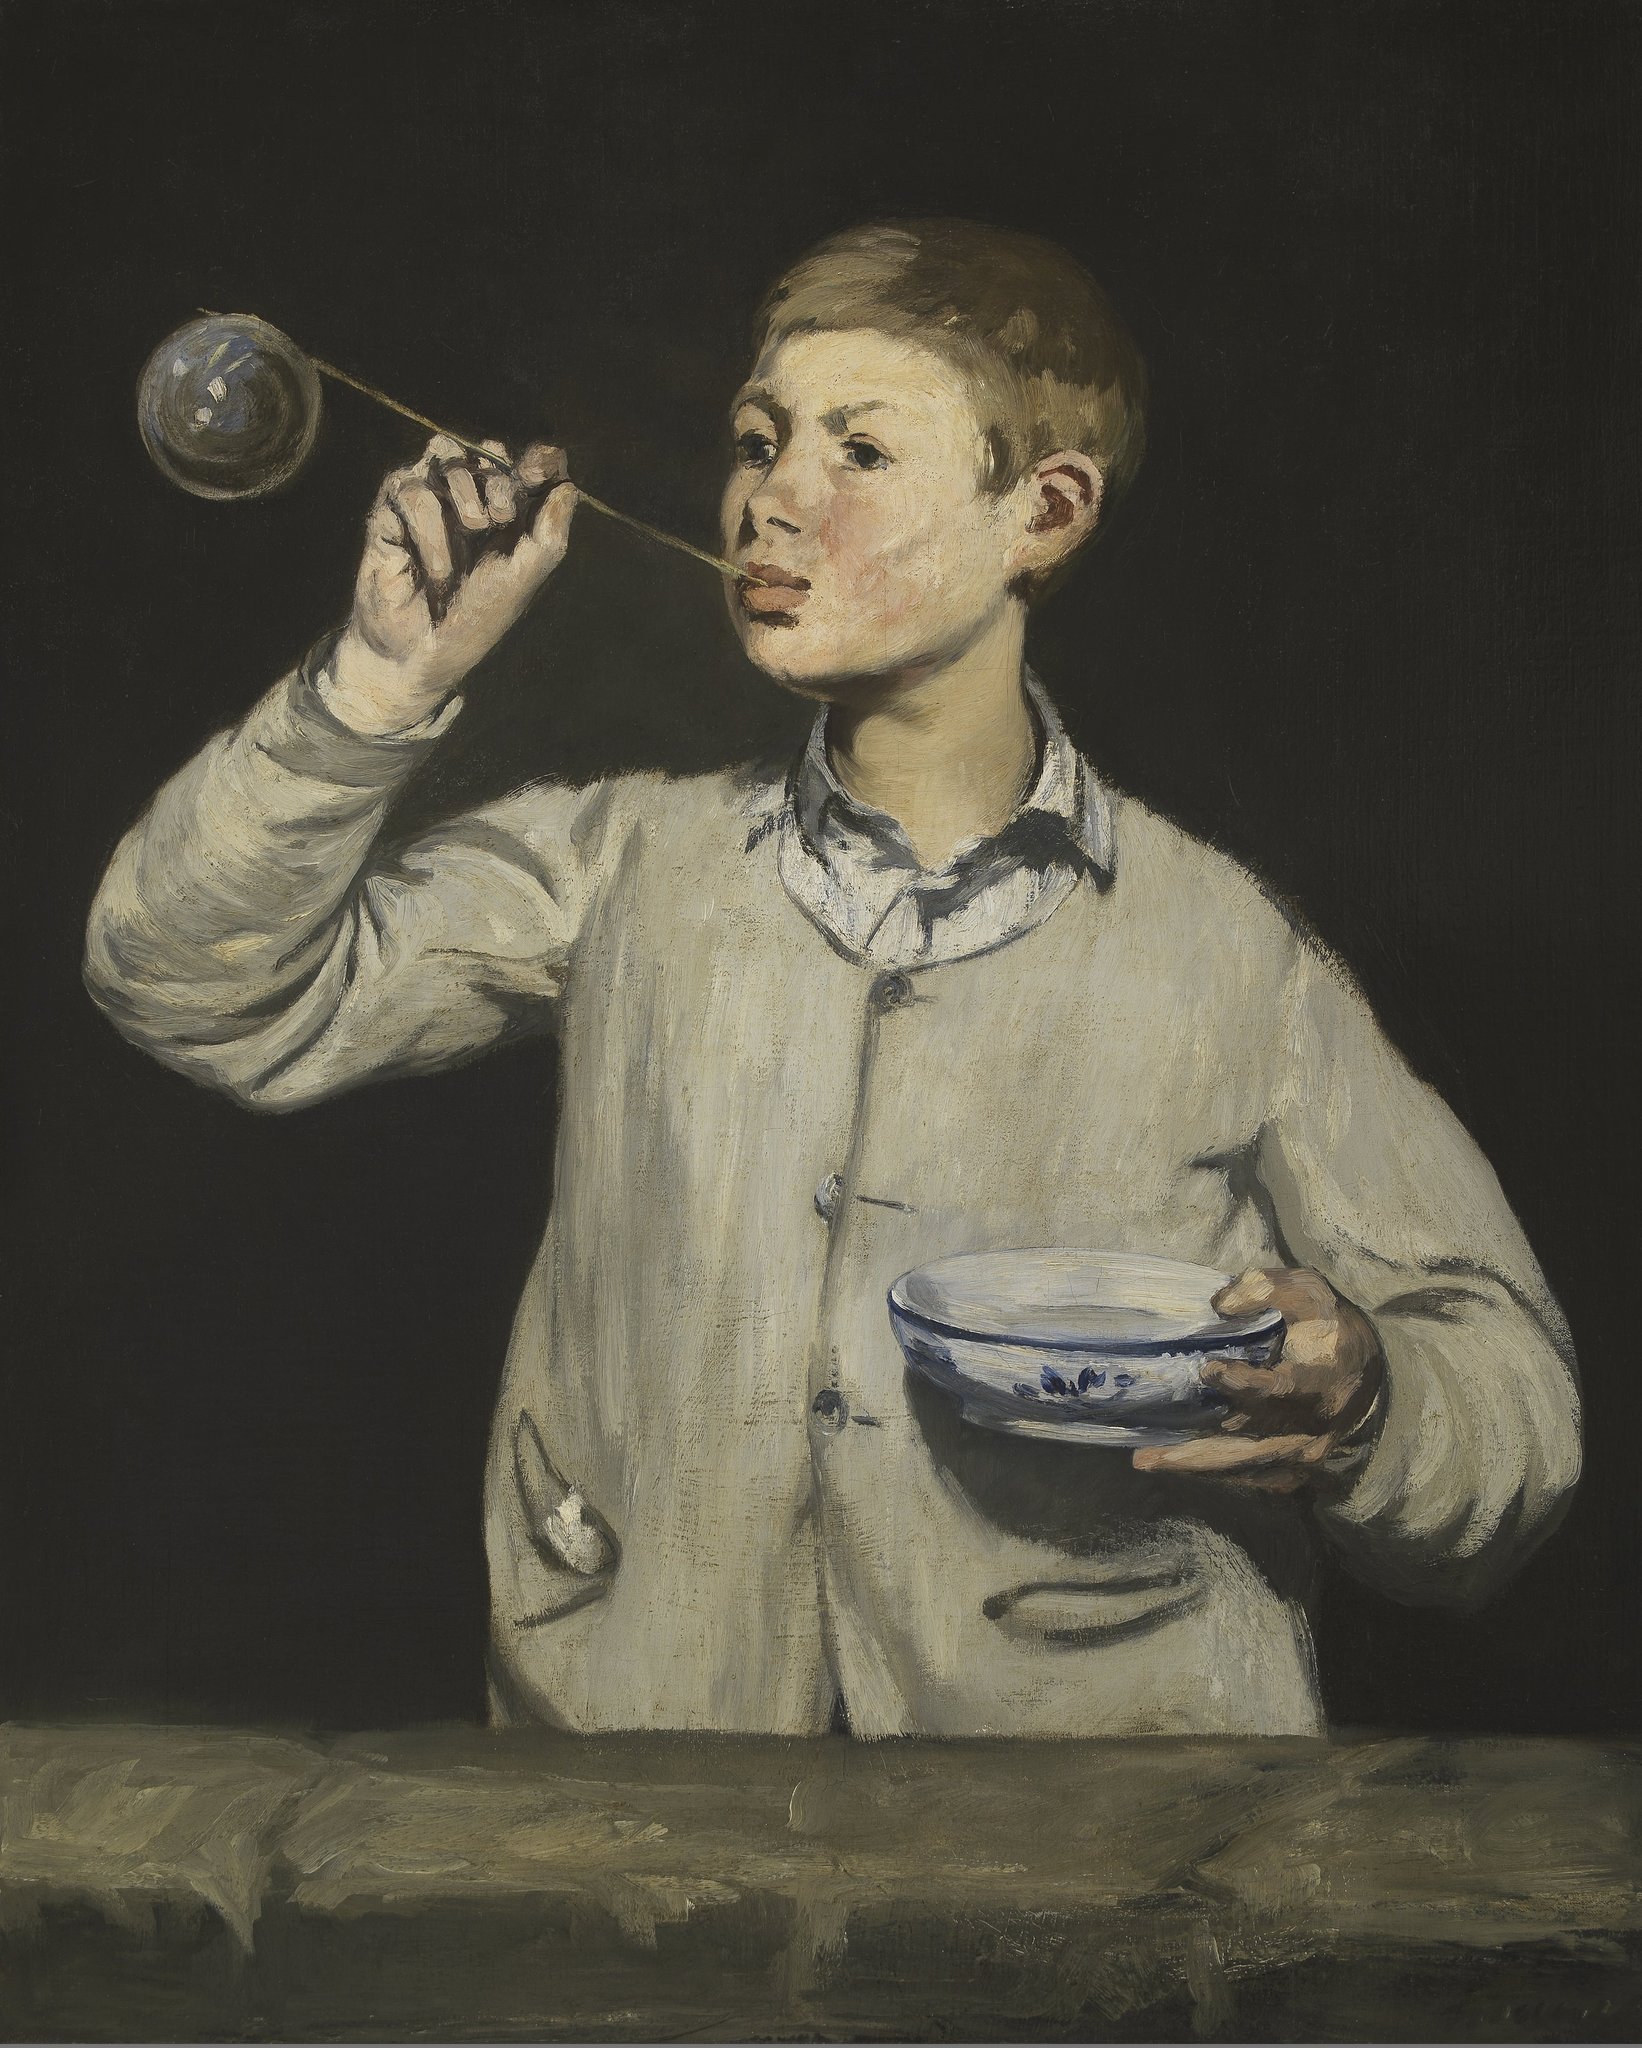 Мальчик, надувающий мыльные пузыри (Boy Blowing Bubbles) by Édouard Manet - 1867 - 100.5 x 81.4 см 